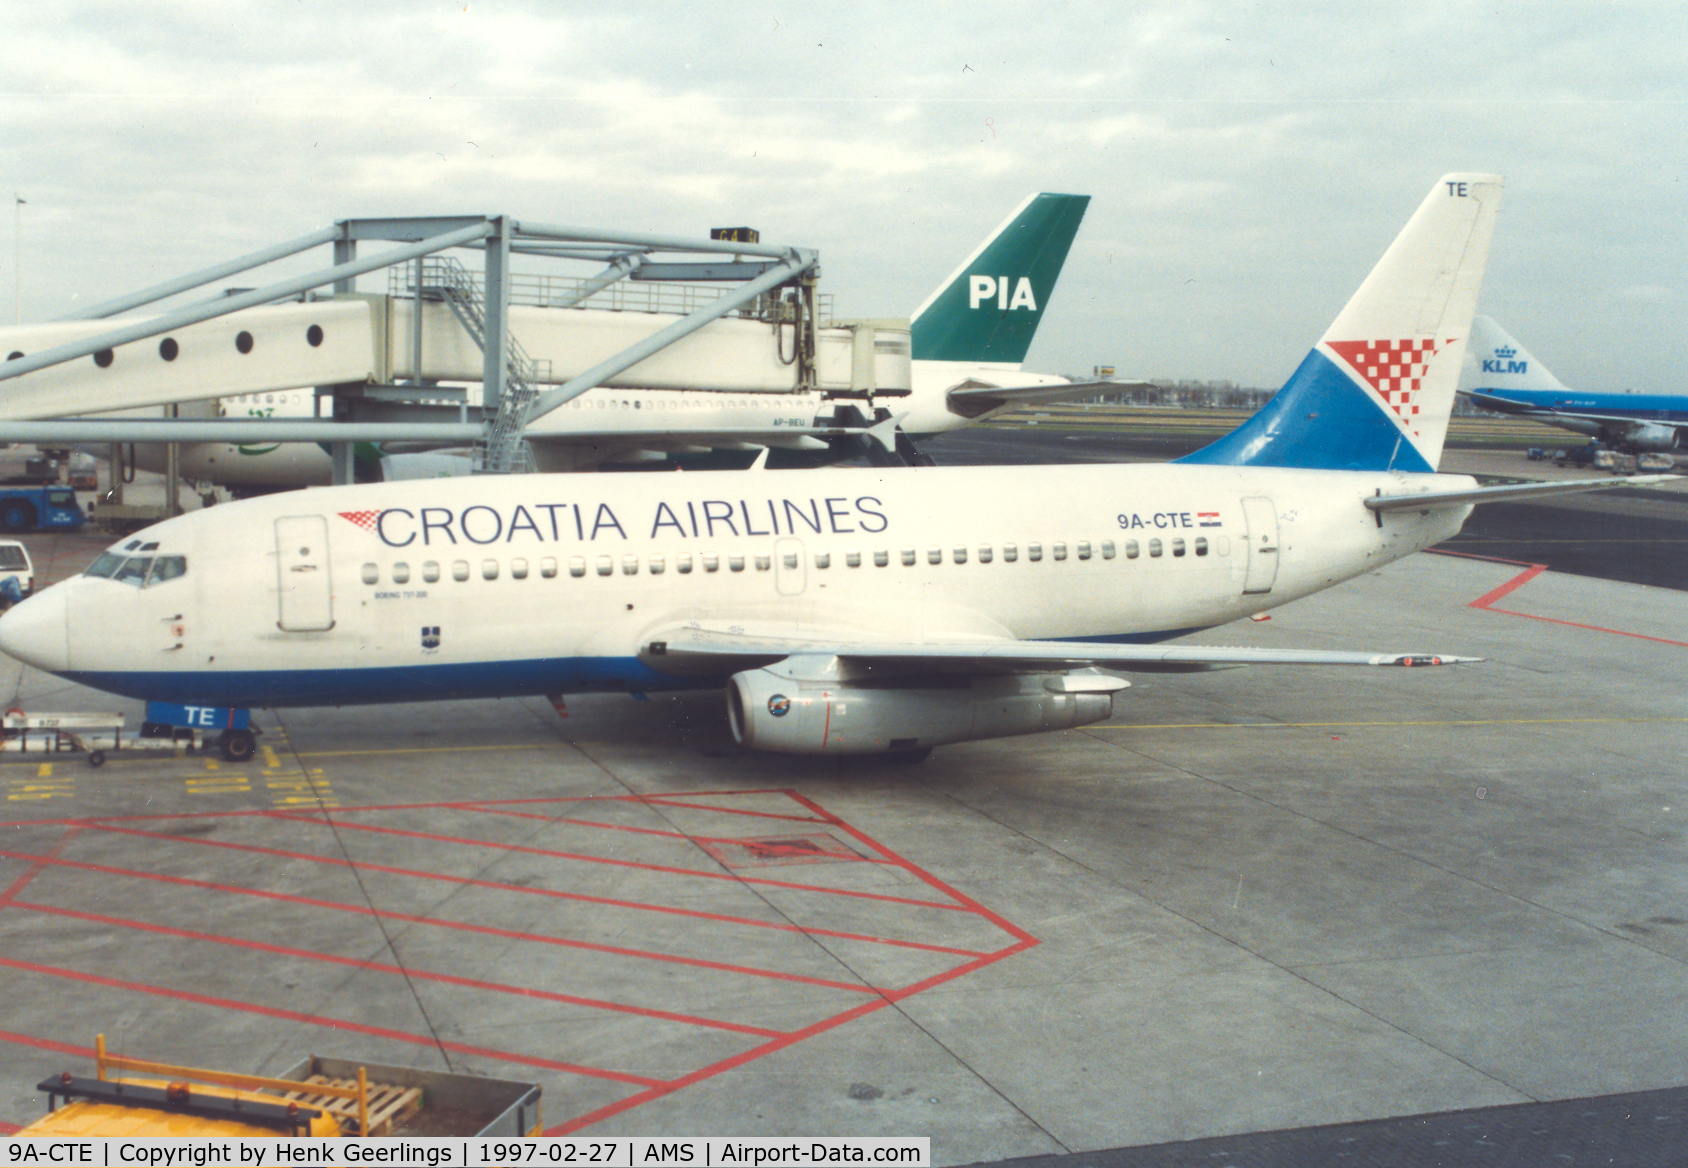 9A-CTE, 1982 Boeing 737-230 C/N 22634, Croatia Airlines